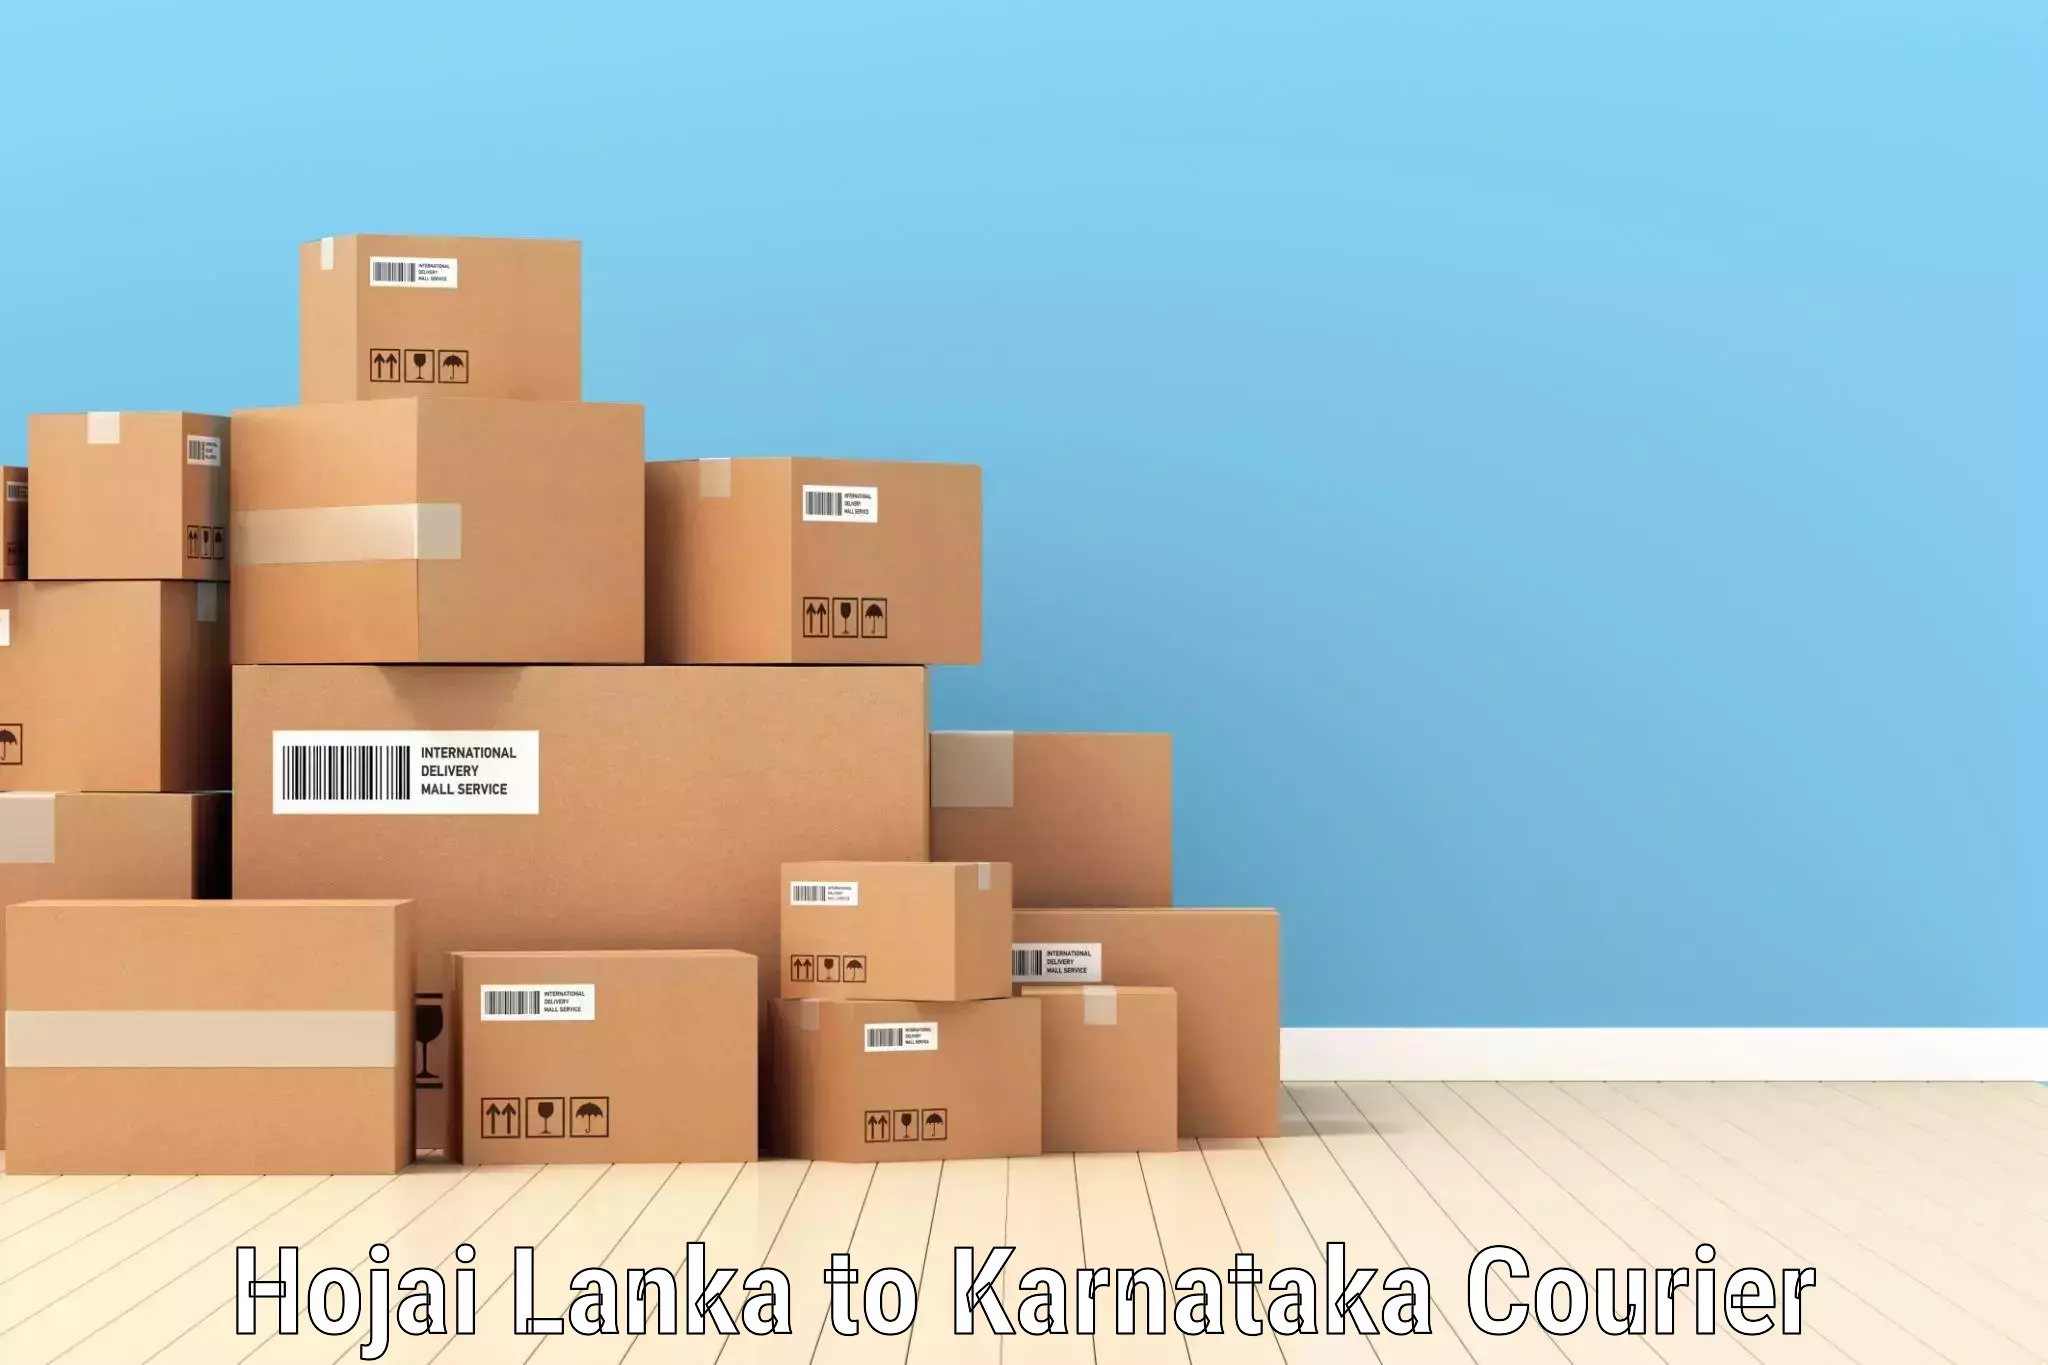 Online package tracking Hojai Lanka to Karnataka